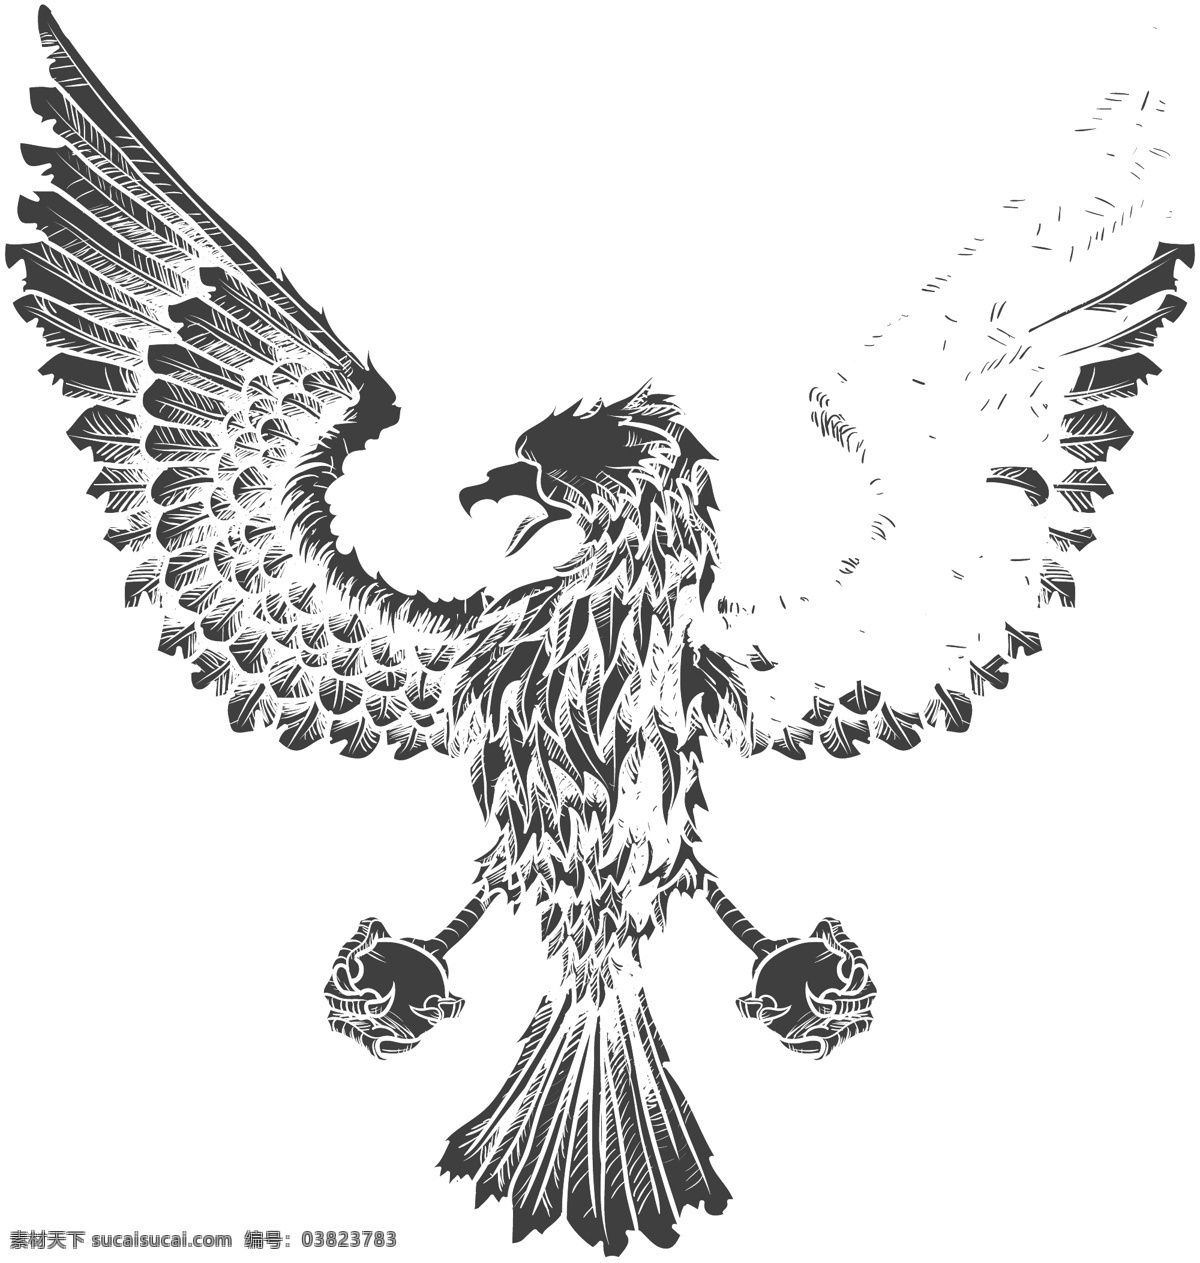 雕刻 神 兽 老鹰 矢量图 雕刻图 衣服素材 神兽 凶猛 鸟类 生物世界 矢量